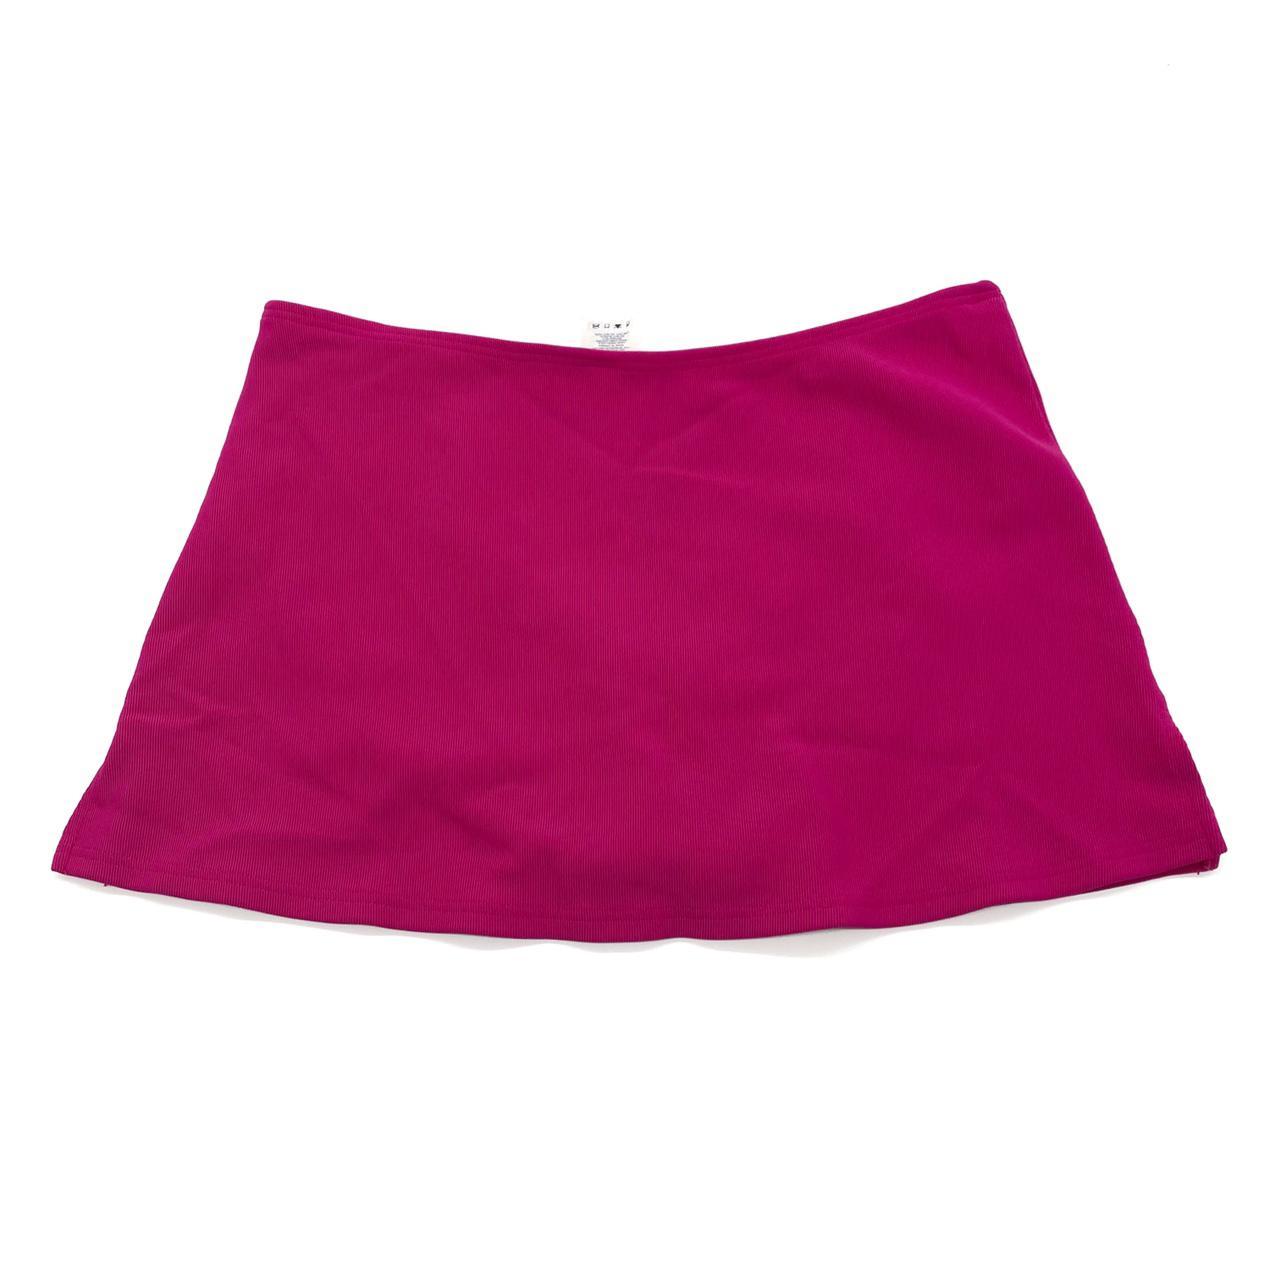 Vintage 1990s hot pink mini skirt / skort Brand:... - Depop